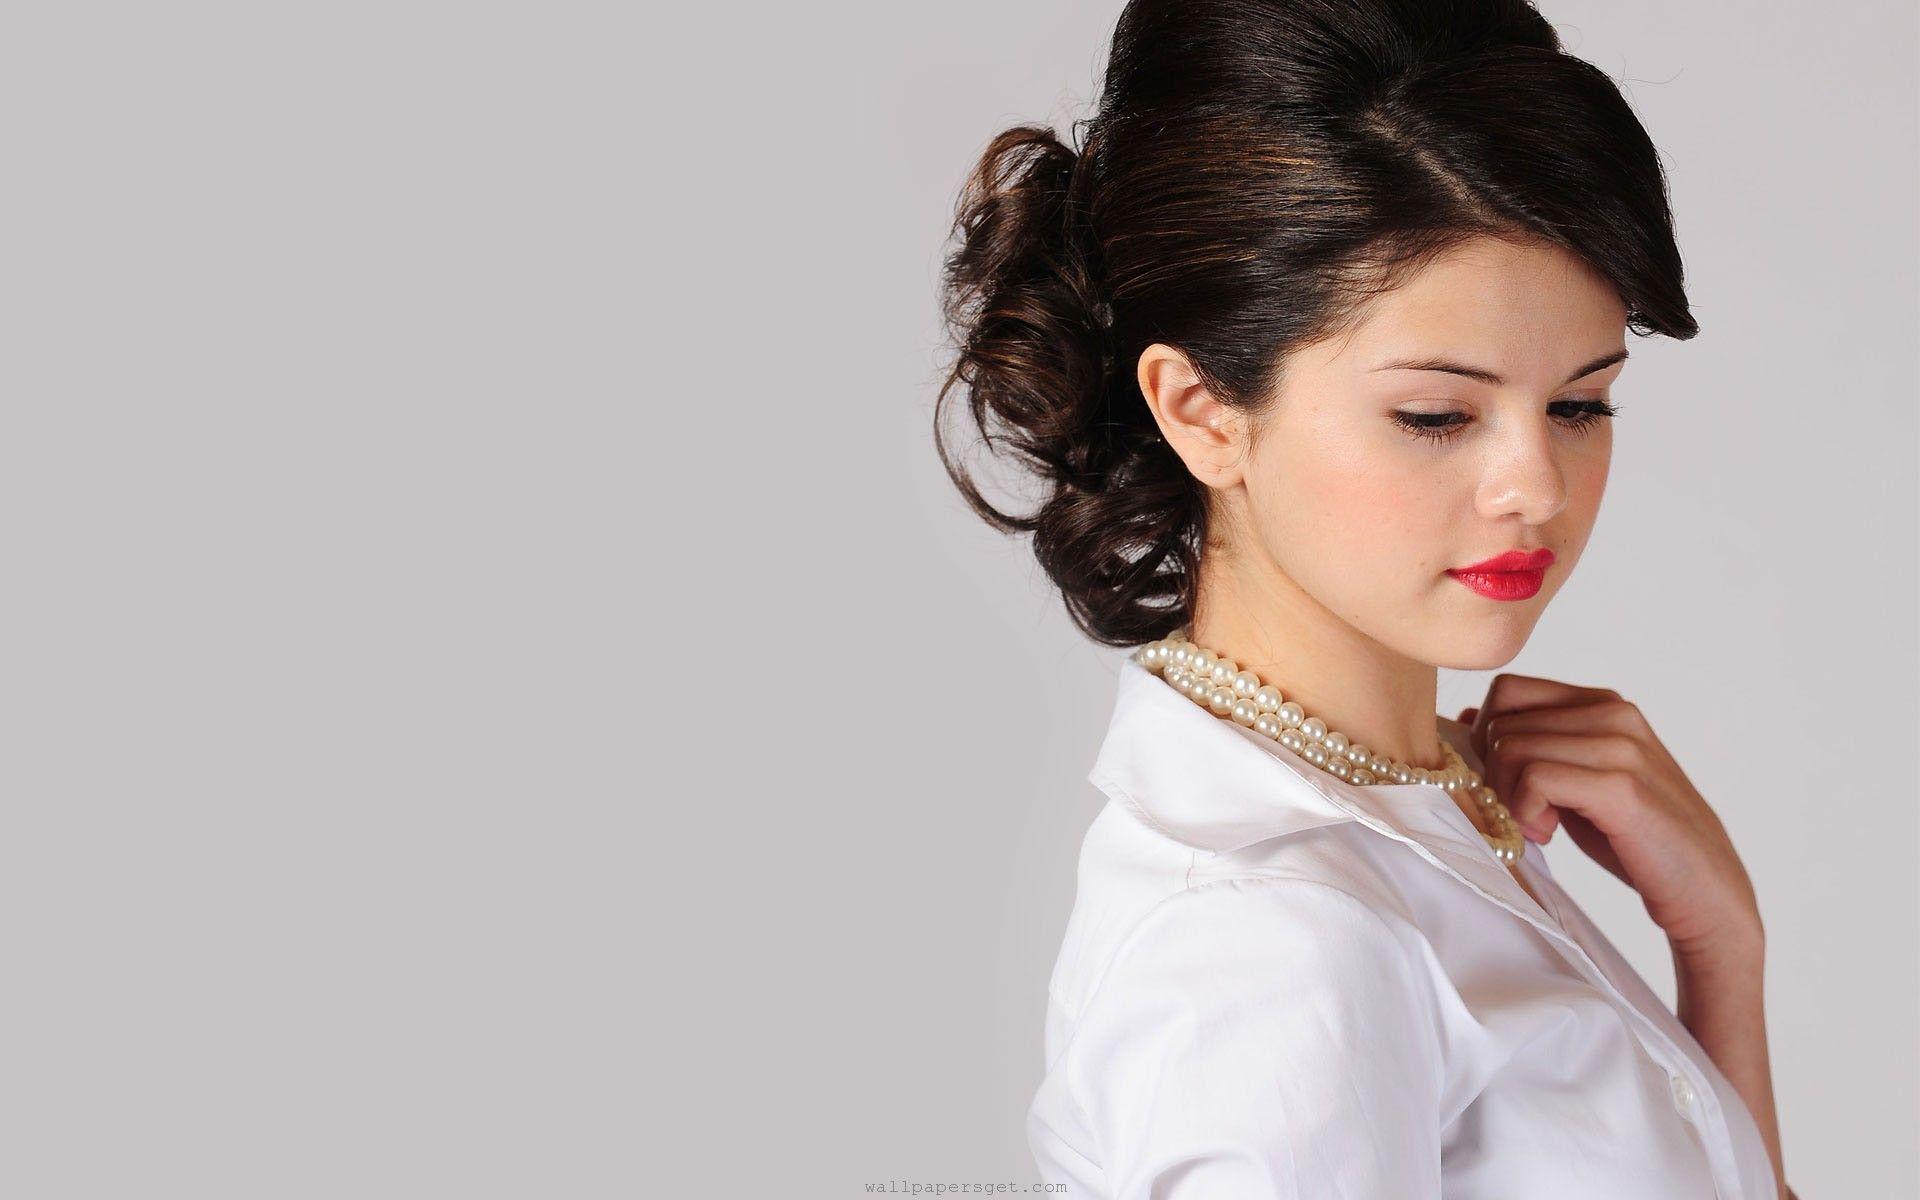 Beautiful Selena Gomez Image 05. hdwallpaper